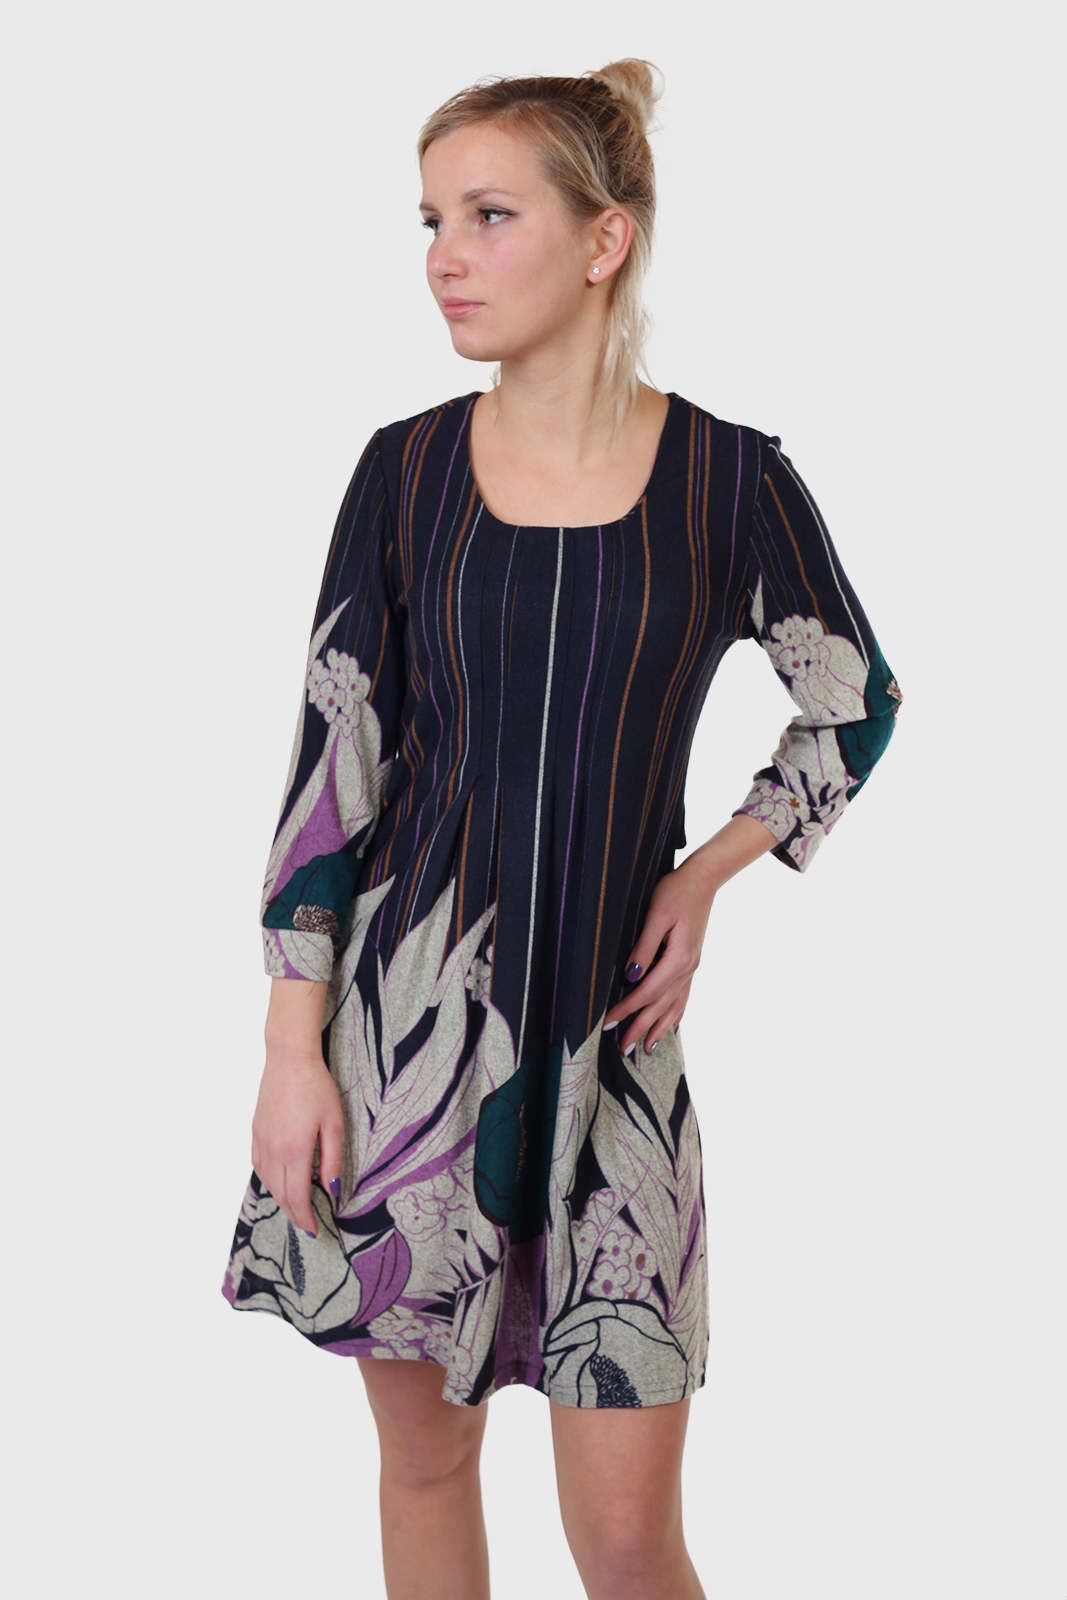 Купить в интернет магазине Военпро короткое платье на осень